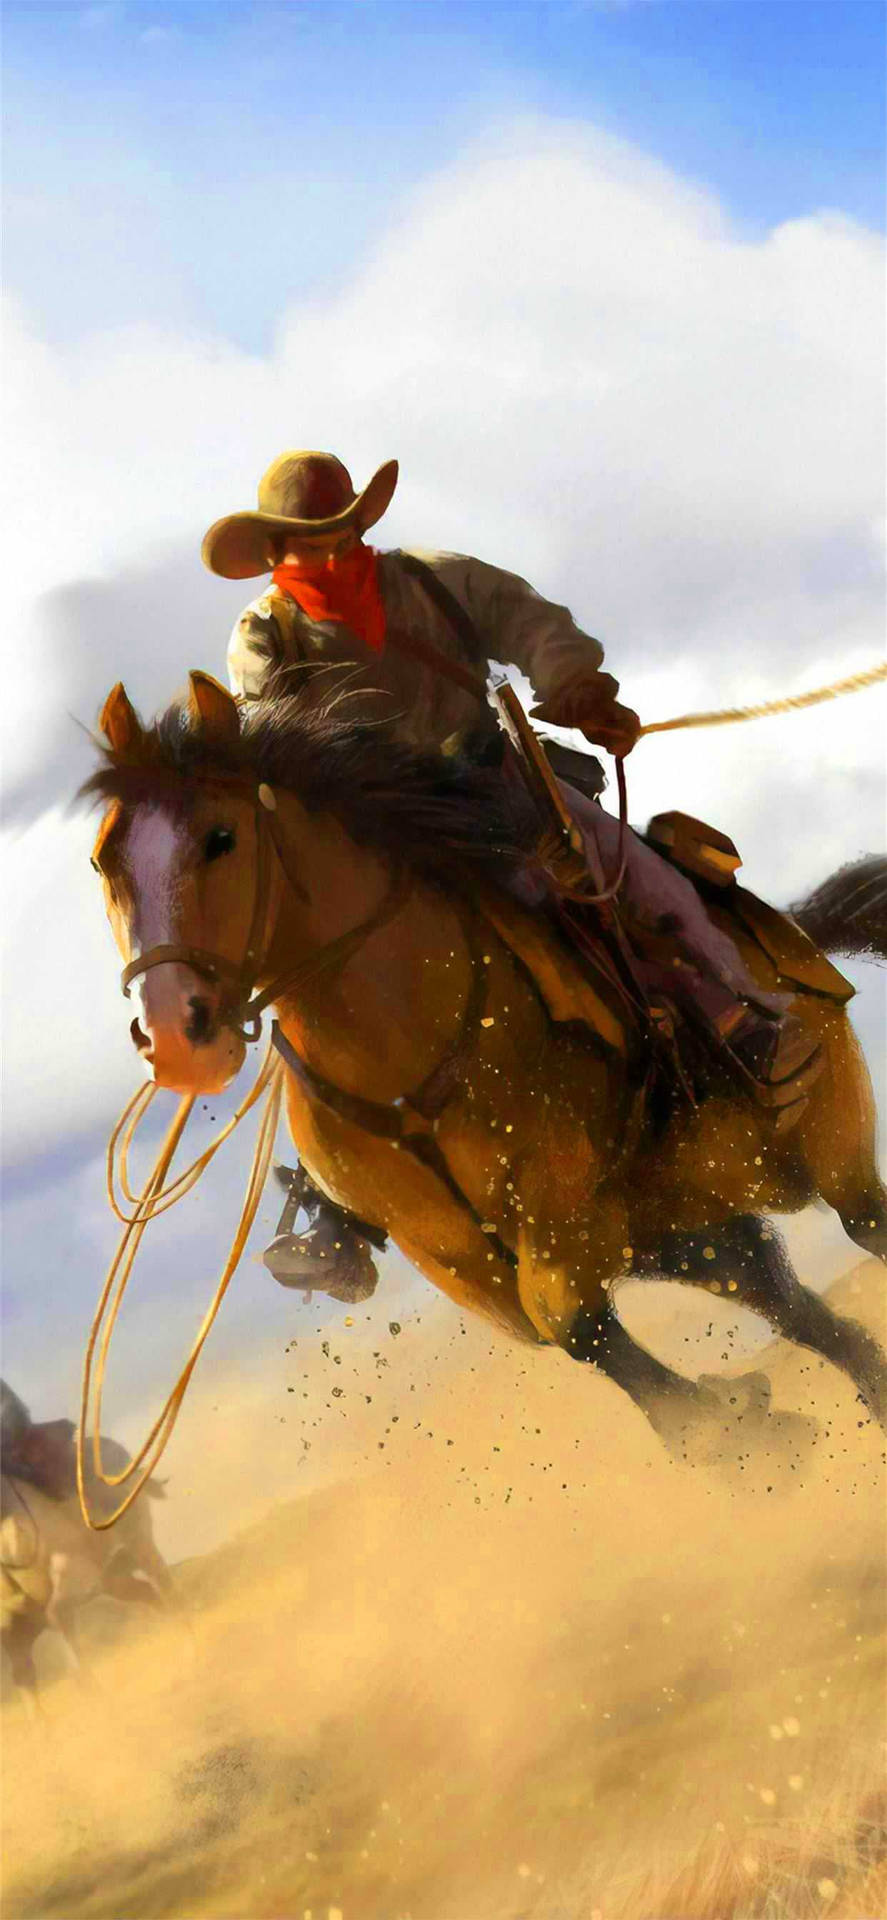 Einstolzer Amerikanischer Cowboy, Der Stolz Seine Beeindruckenden Reitfähigkeiten Präsentiert. Wallpaper